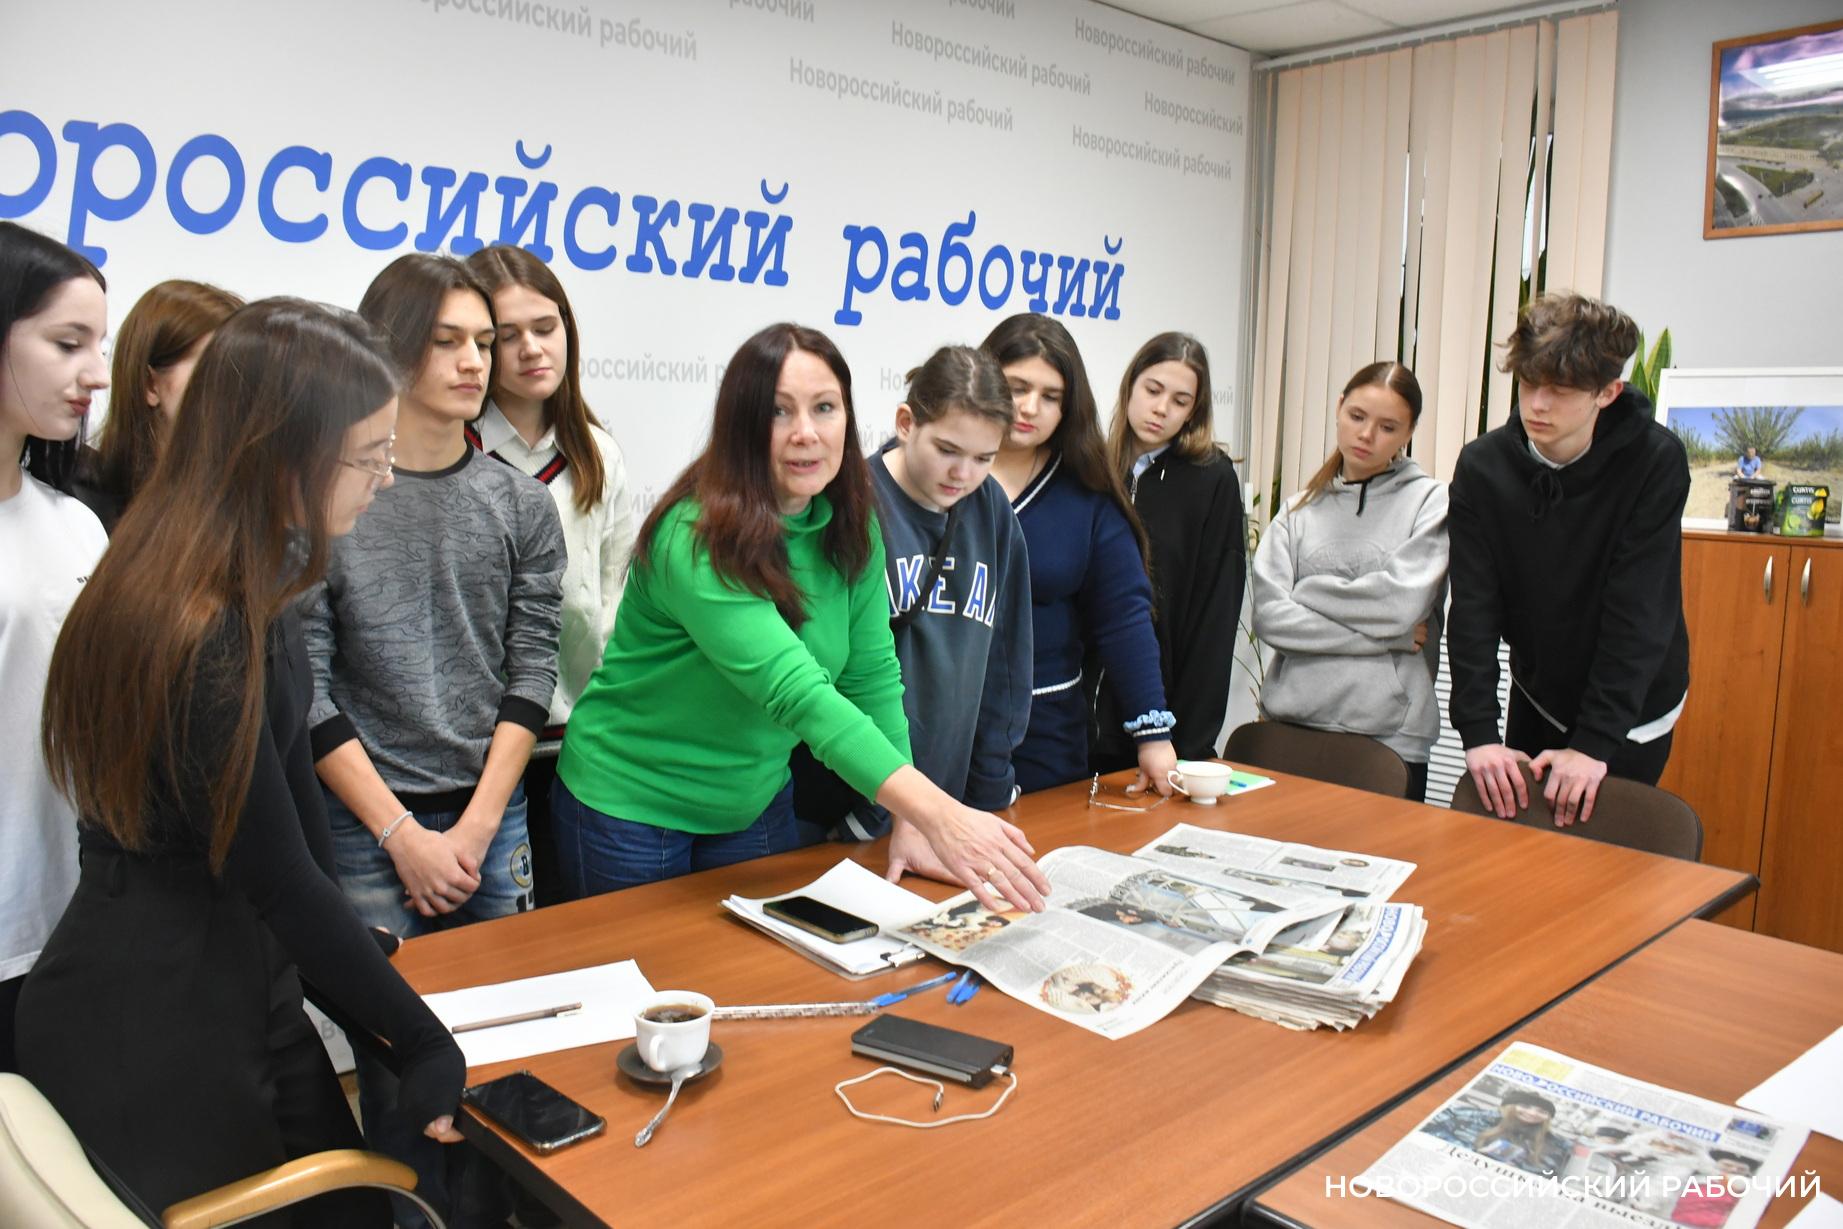 Сегодня – День печати! «Новороссийский рабочий» поздравляет всех причастных